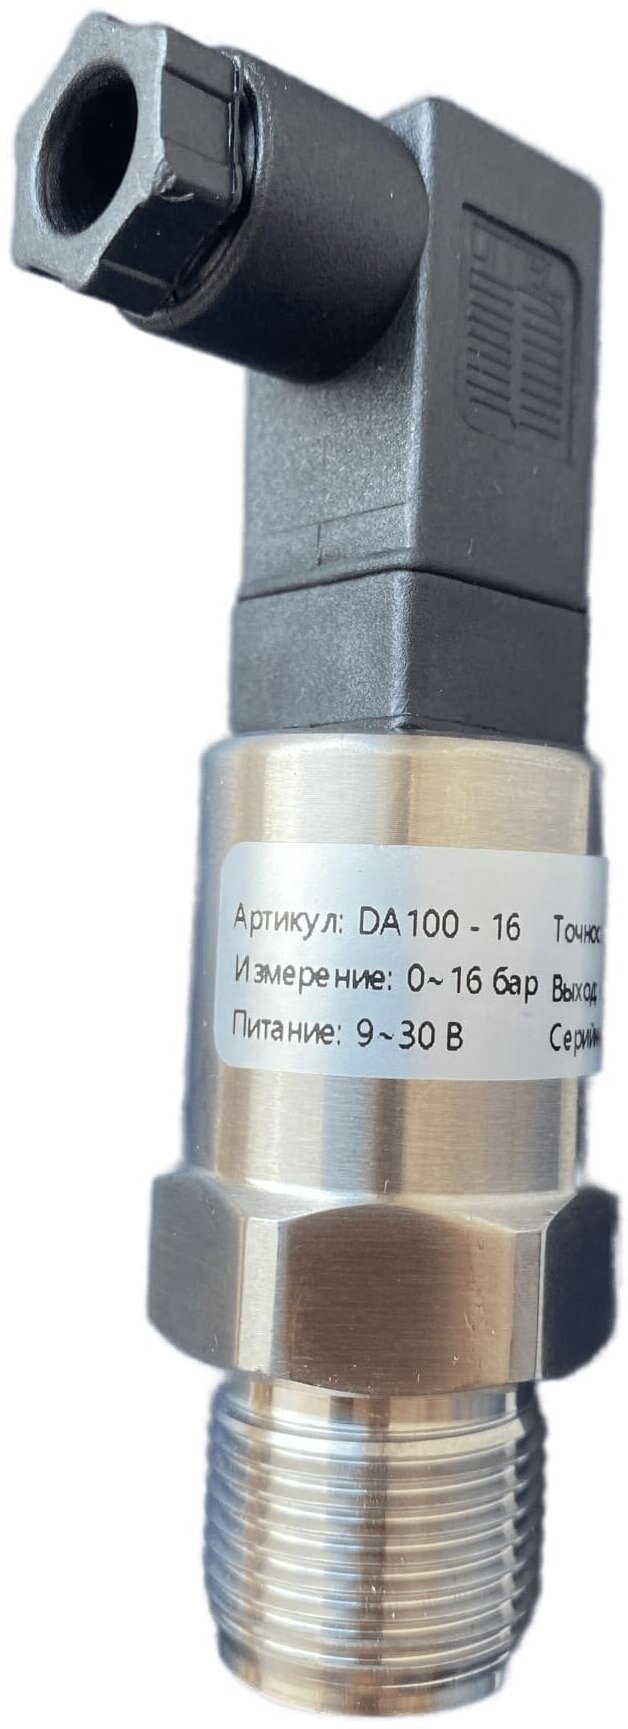 DA100-16 Датчик давления 24В с выходом 4-20мА, резьба М20х1.5, давление 0-16 бар